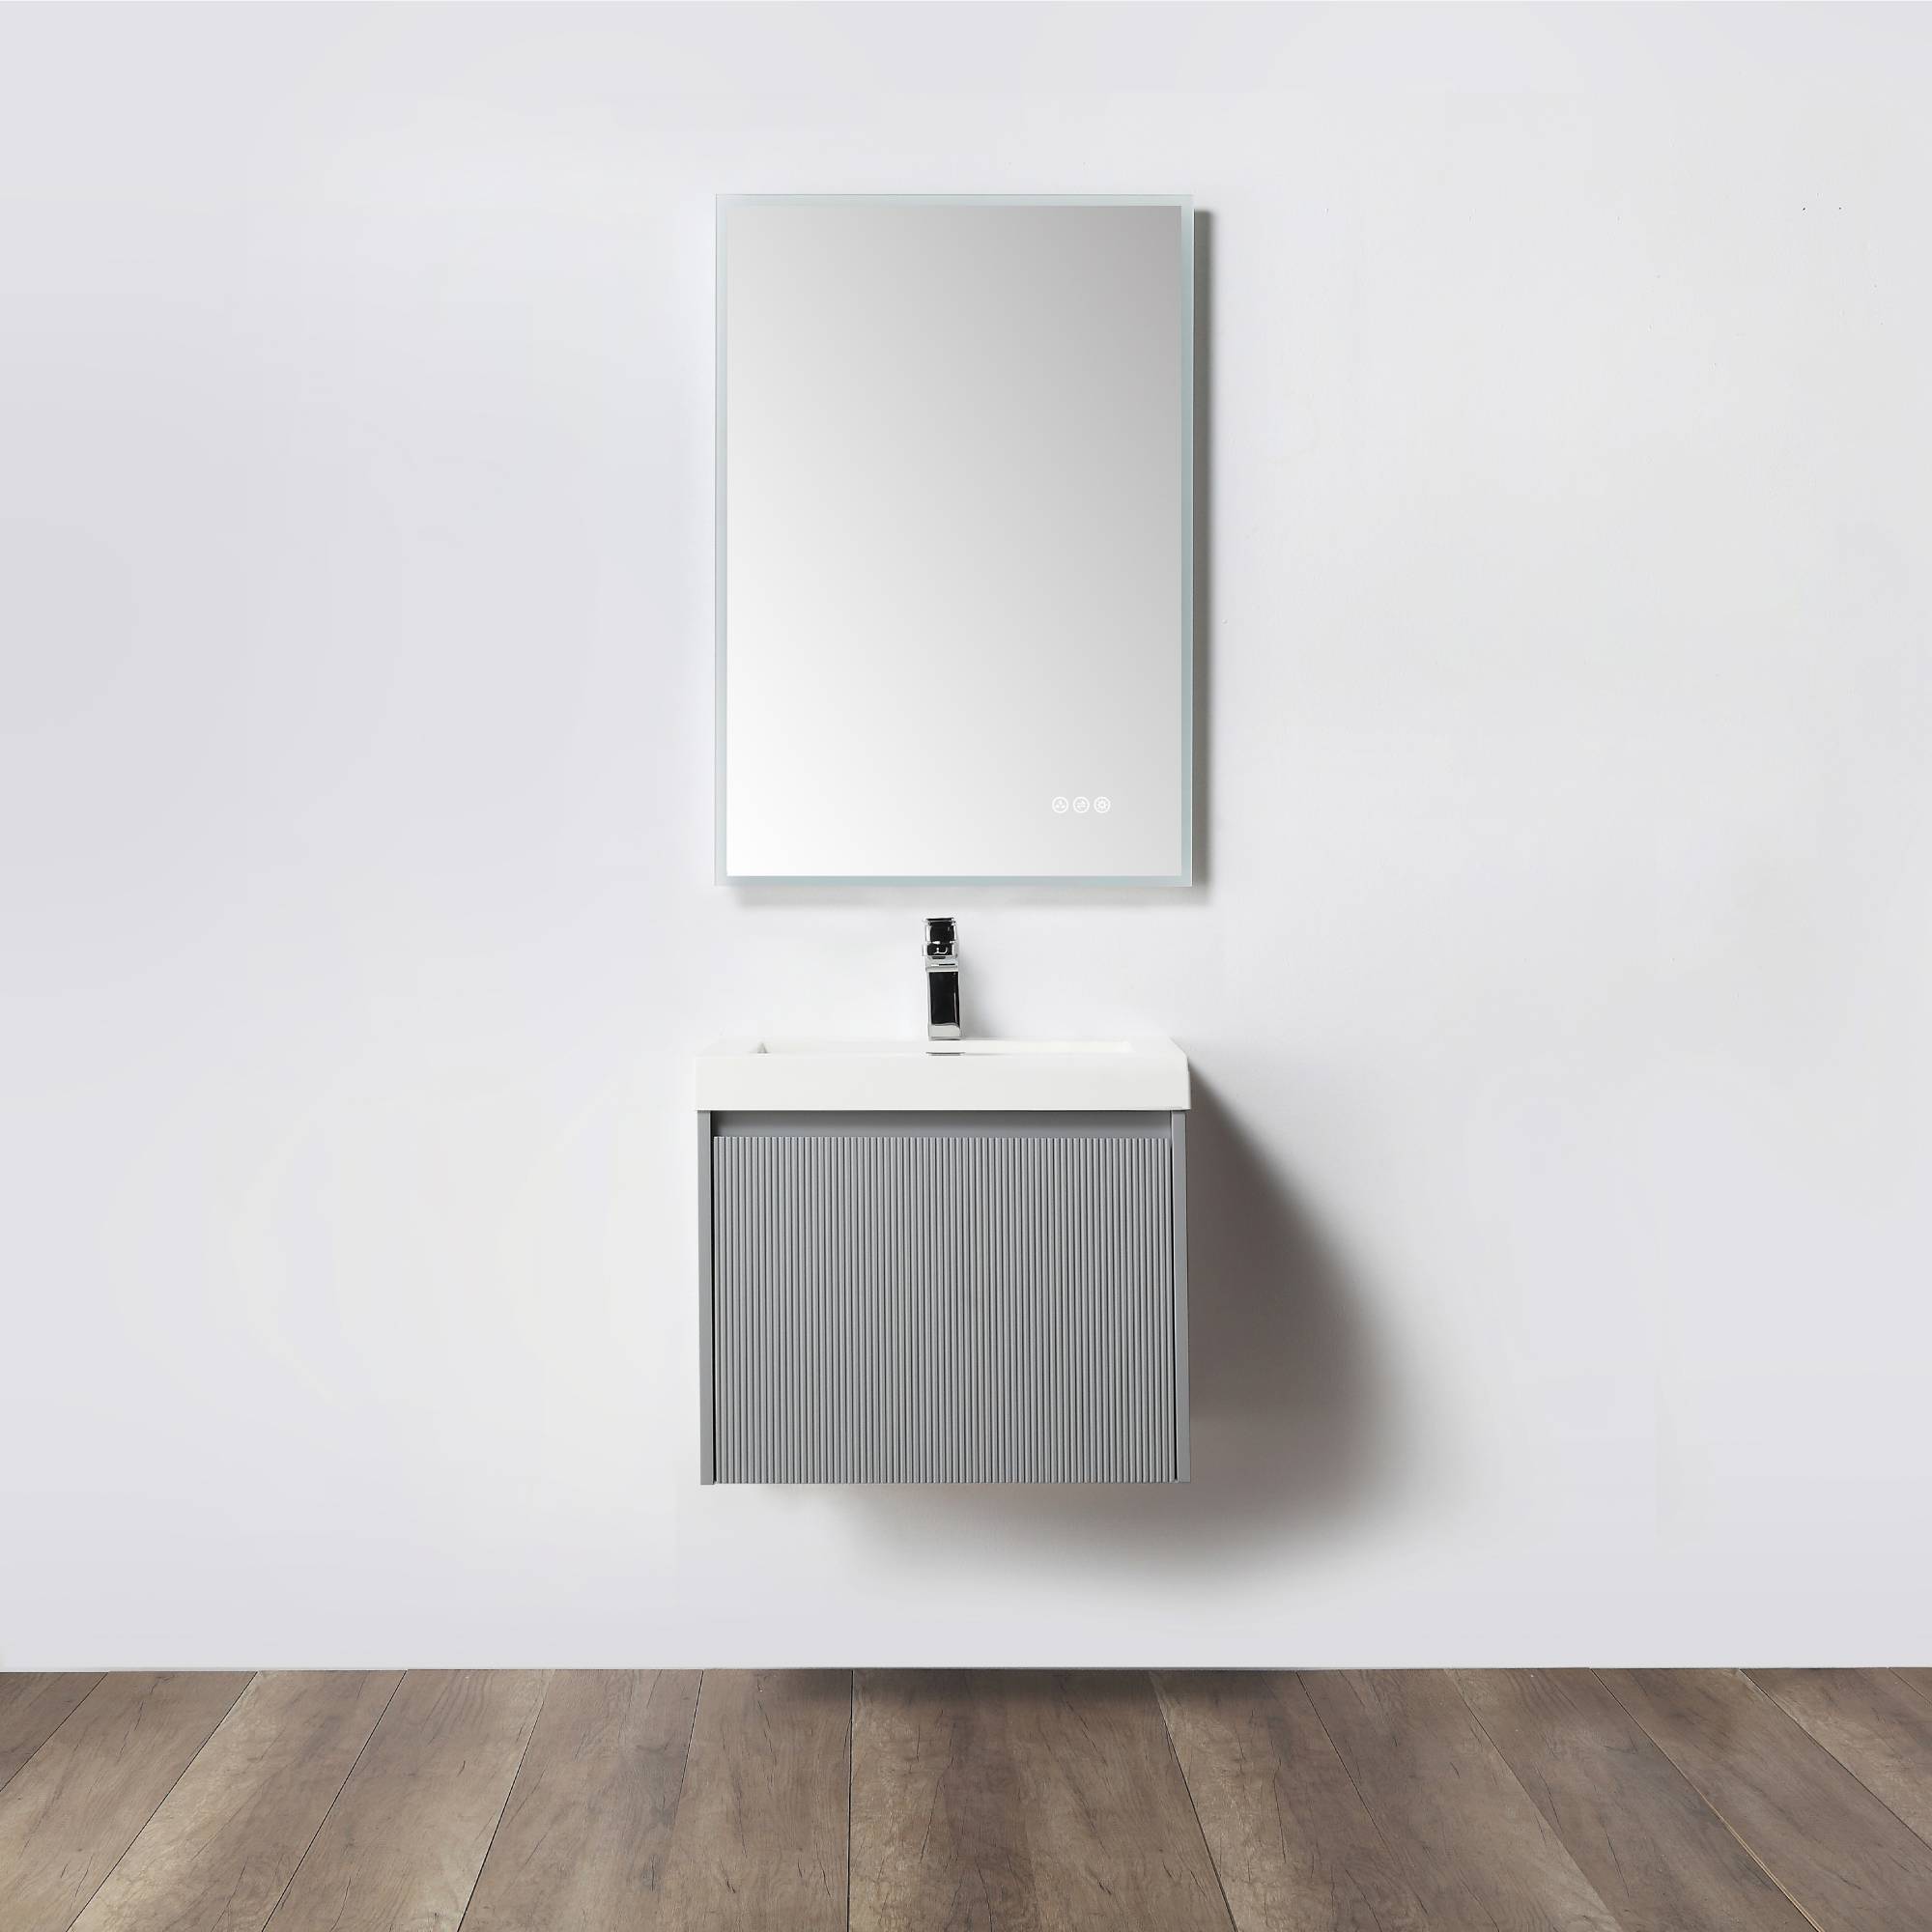 Positano 24" Bathroom Vanity  #size_24"  #color_light grey